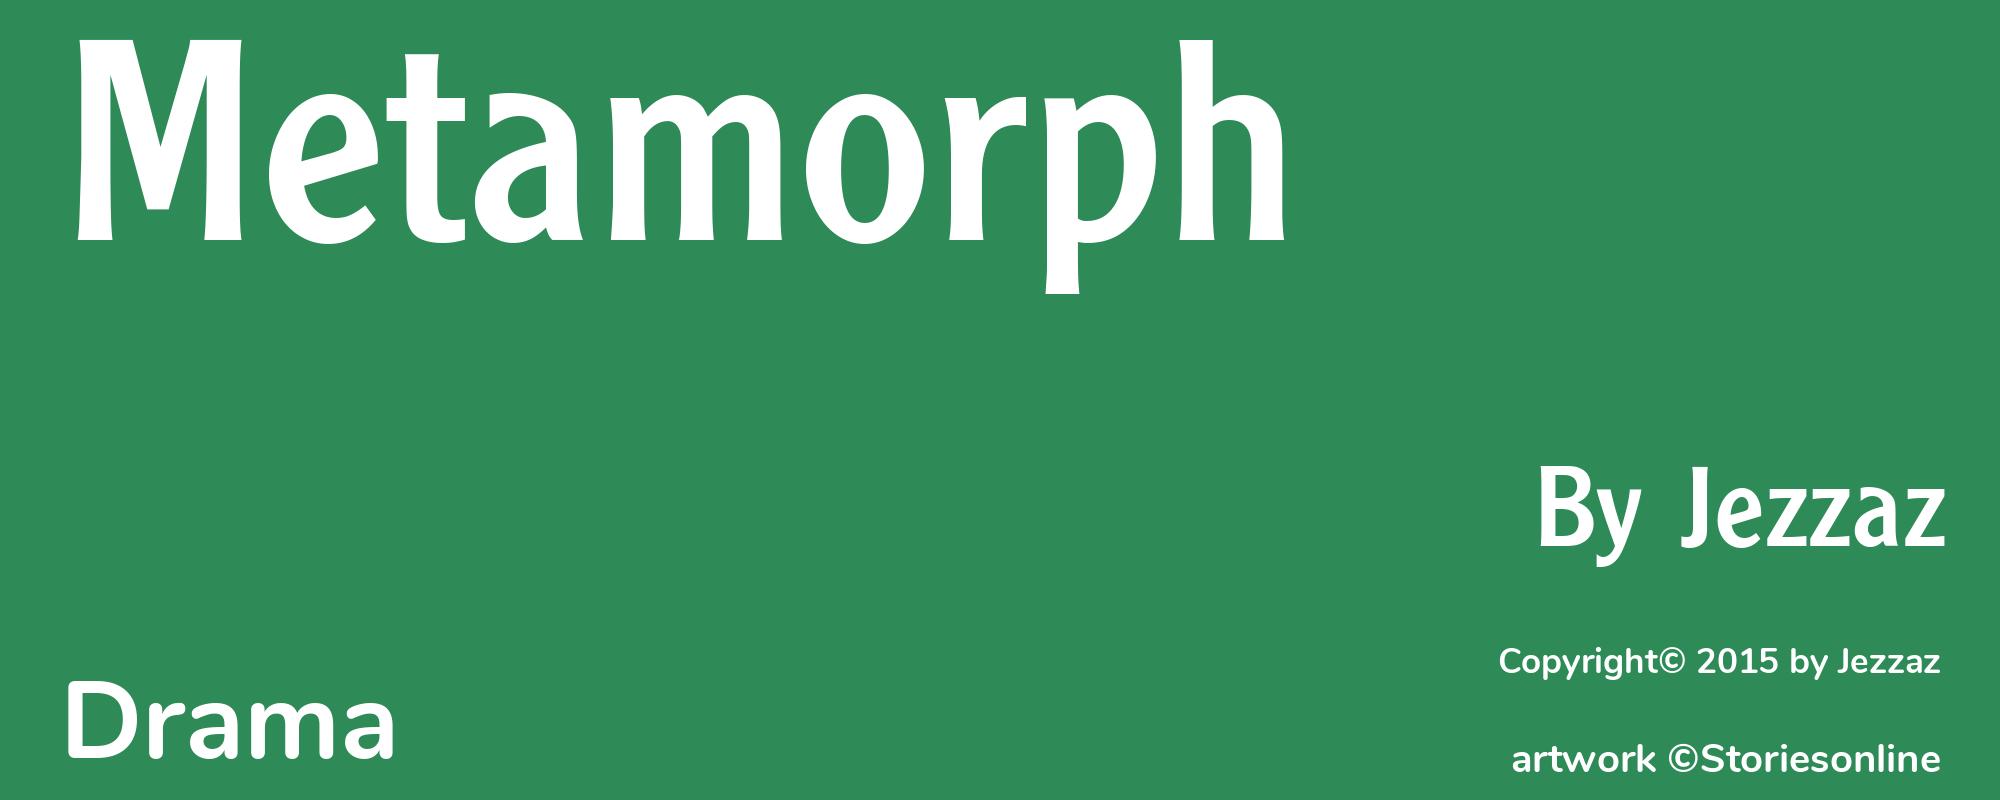 Metamorph - Cover